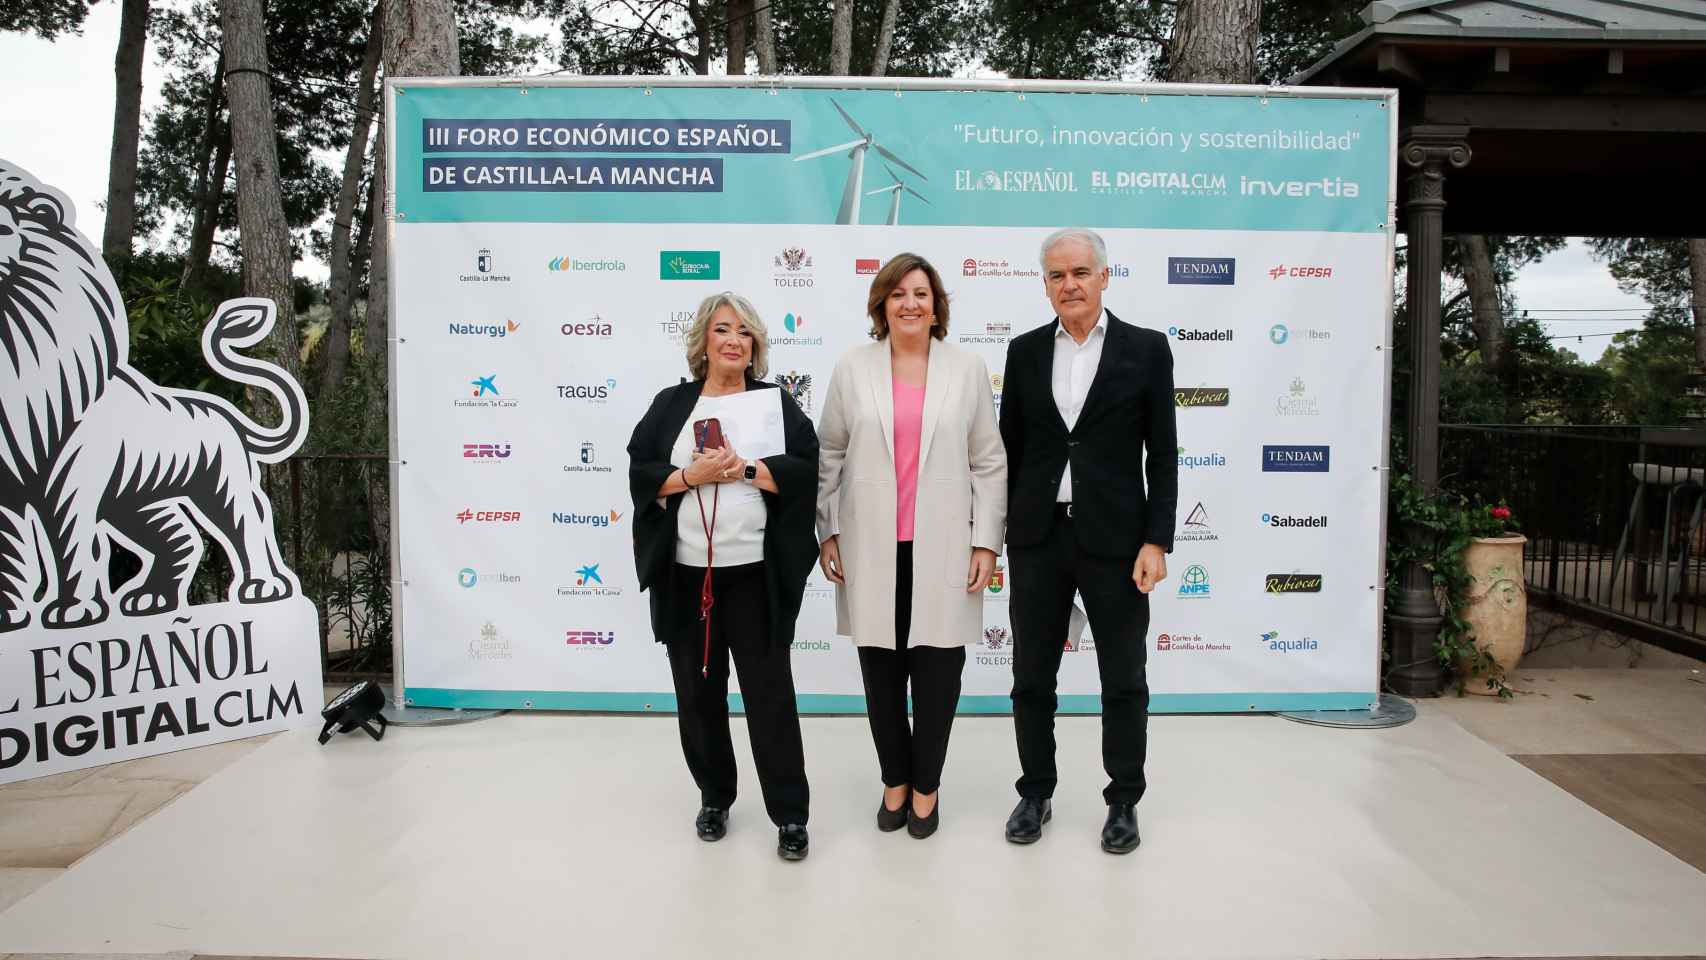 Segunda jornada del III Foro Económico Español Castilla-La Mancha ‘Futuro, innovación y sostenibilidad’